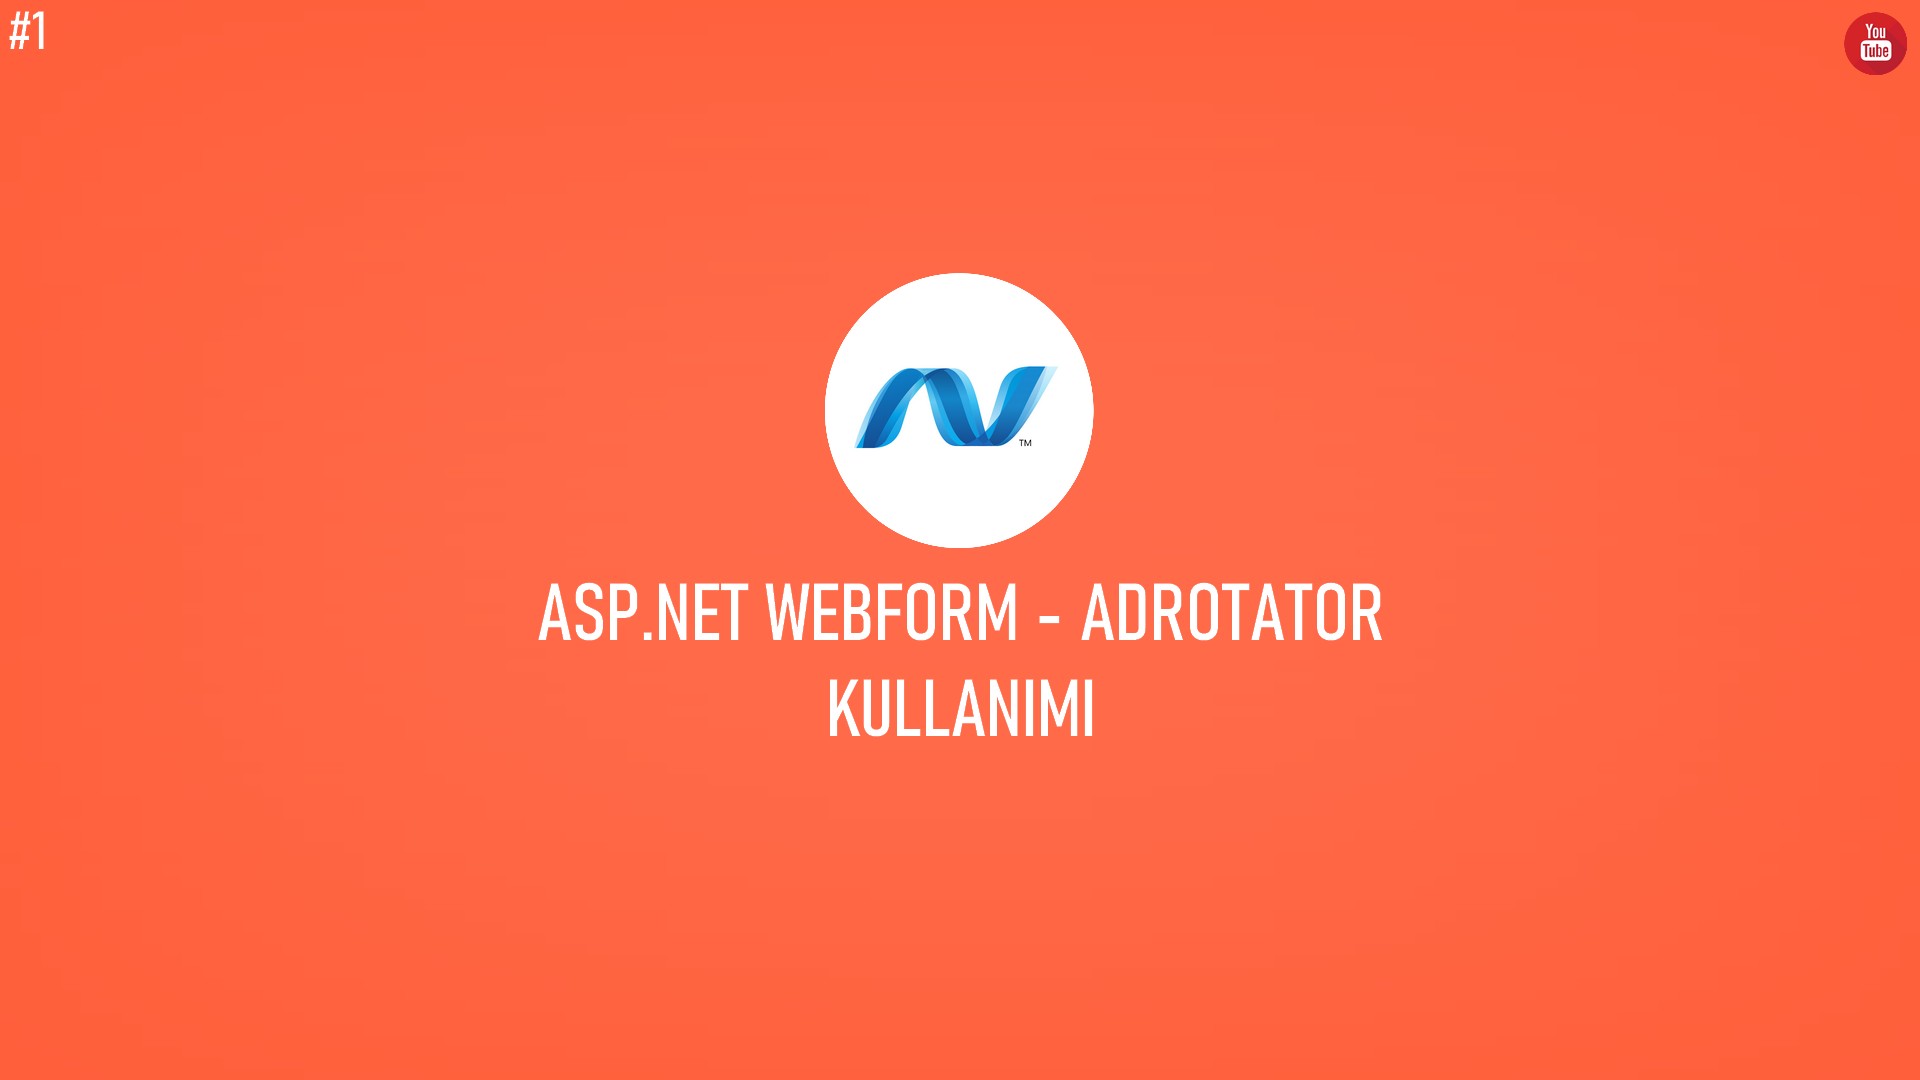 C# ASP.NET WebForm - AdRotator Kullanımı (Video İçerik) başlıklı içeriğin resmi